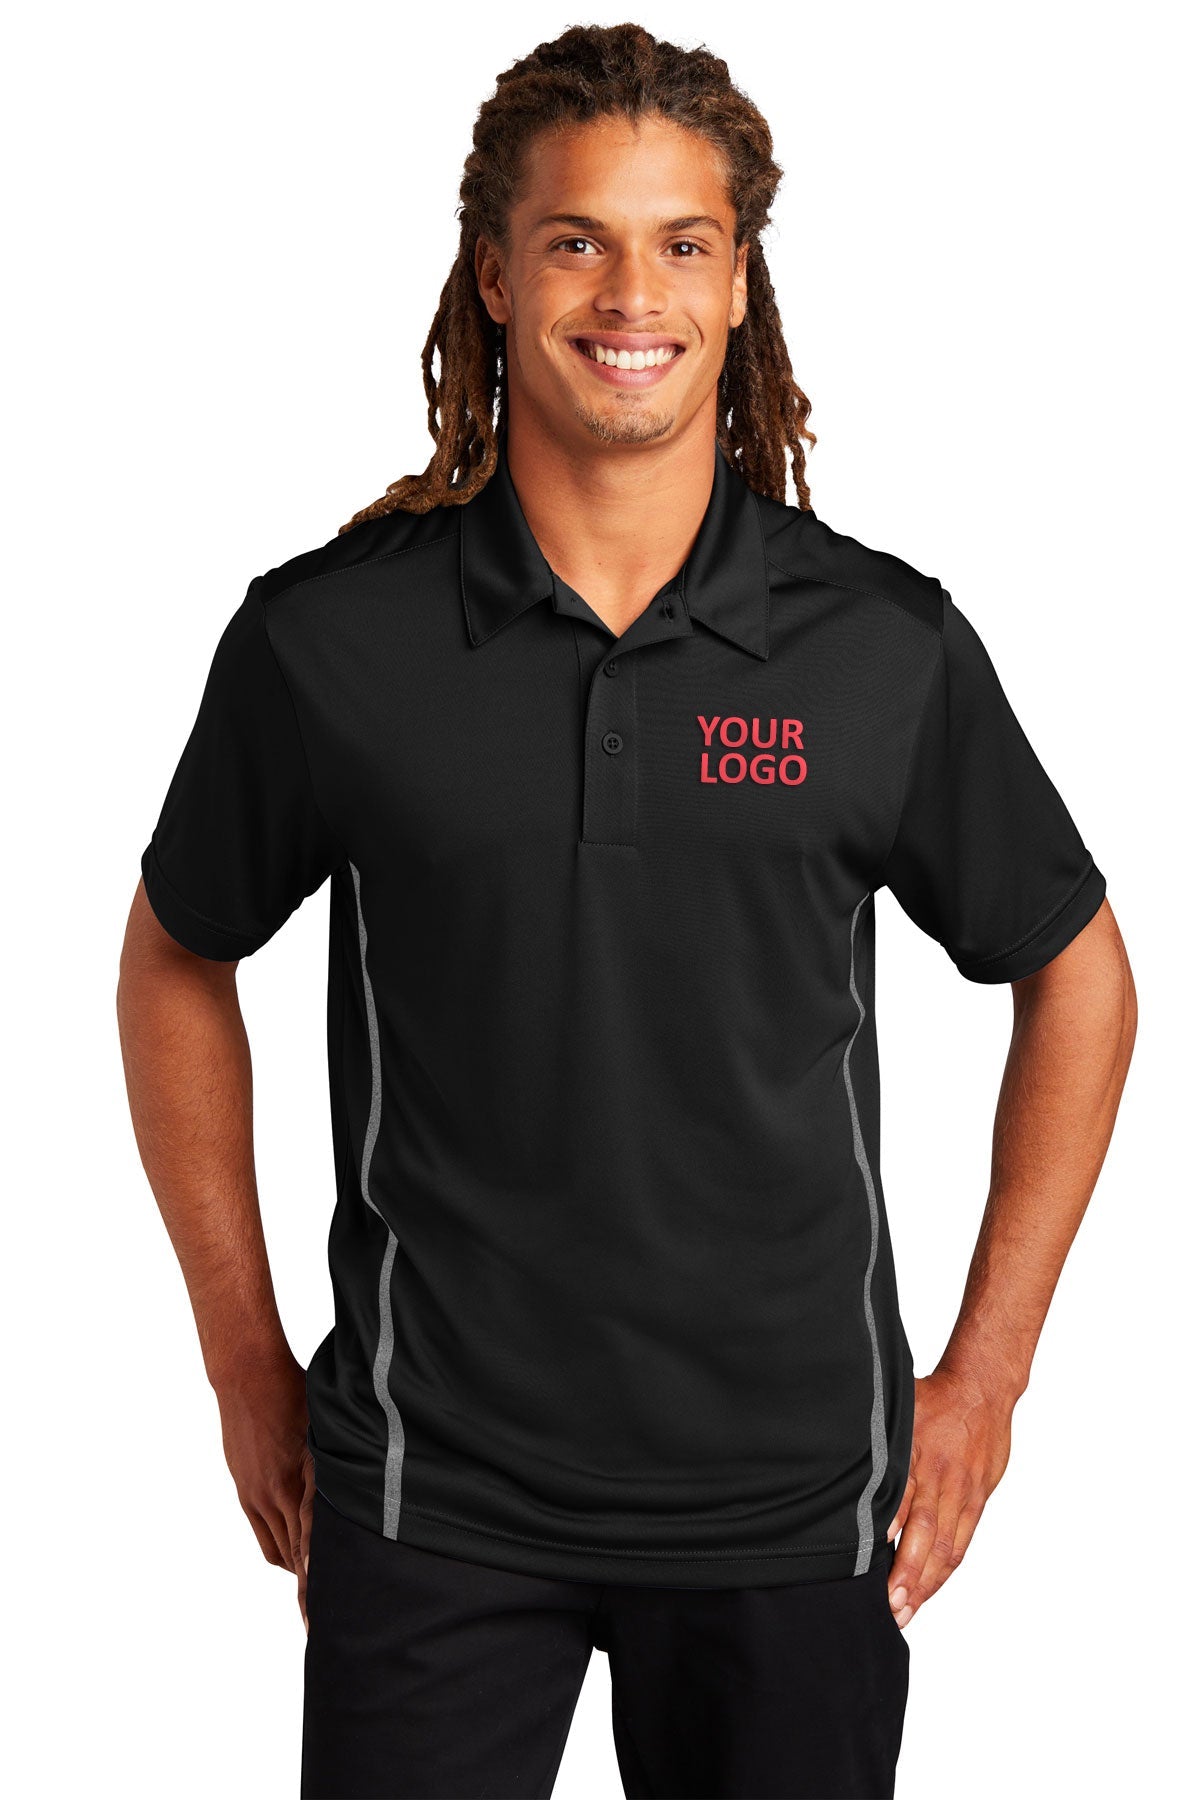 Sport-Tek Black/ Heather Grey ST620 custom polo shirts dri fit